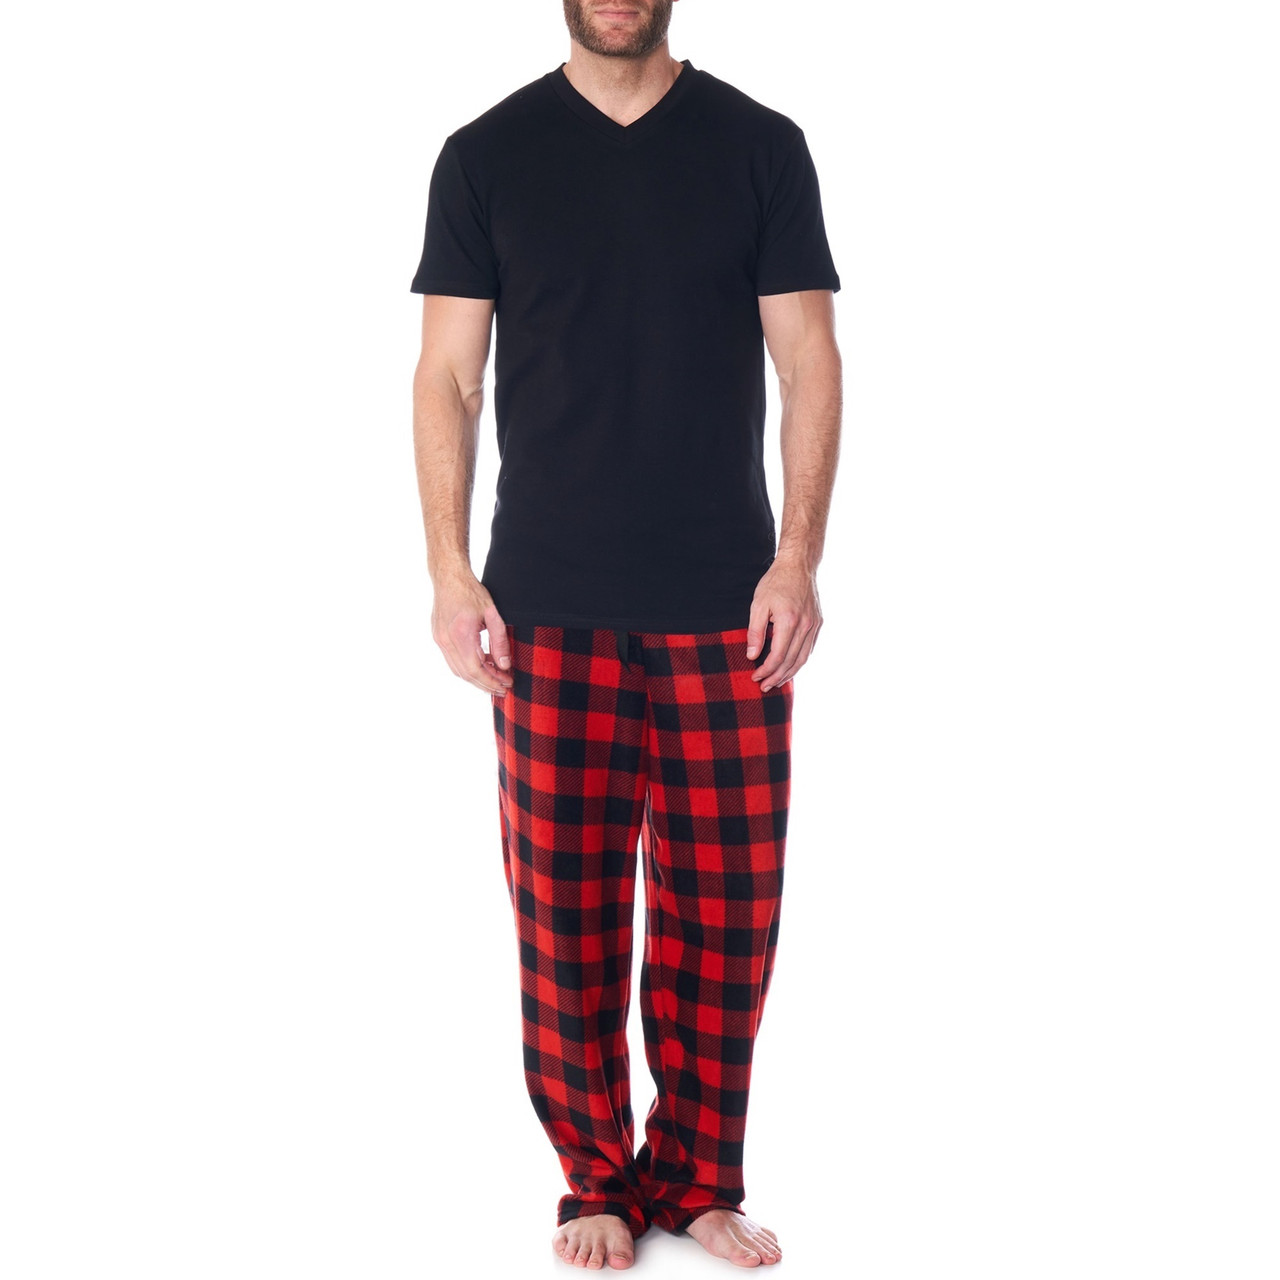 Men's Fleece Pajamas & Fleece PJs Pants